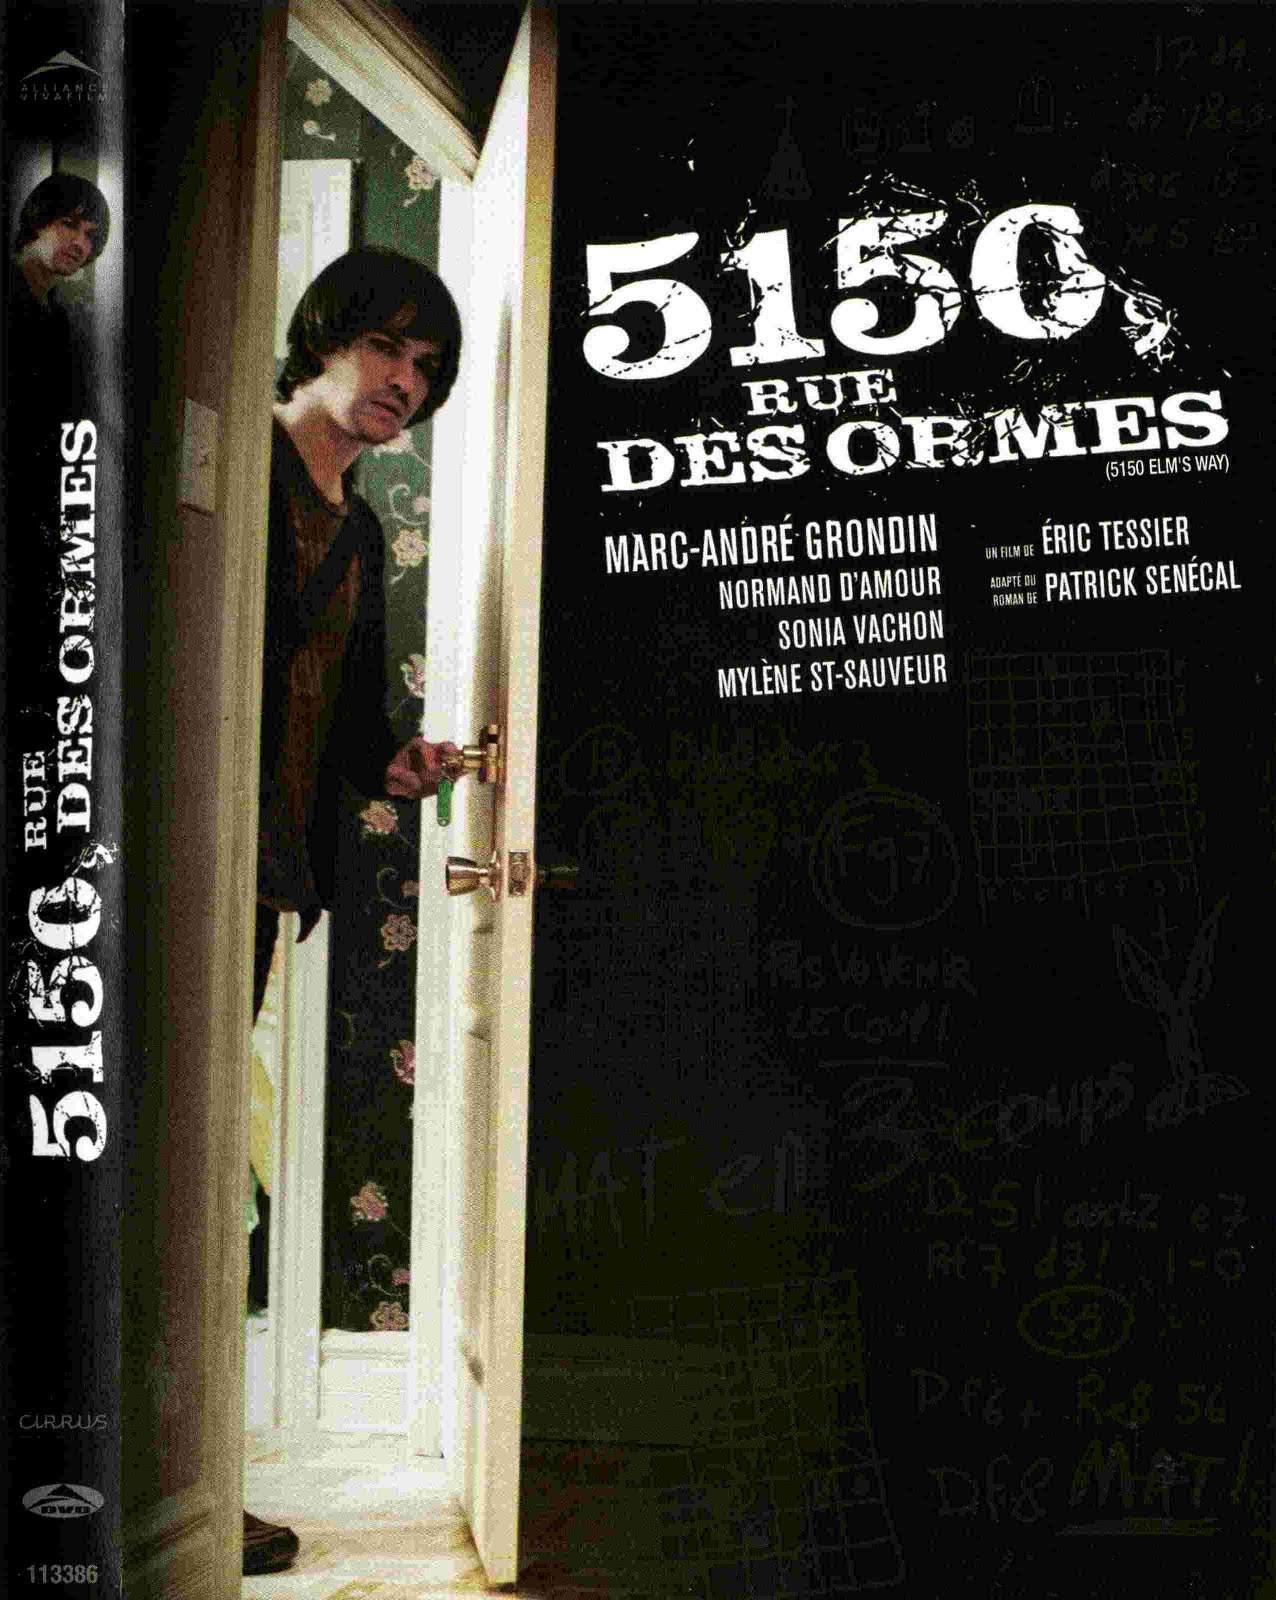 5150, RUE DES ORMES